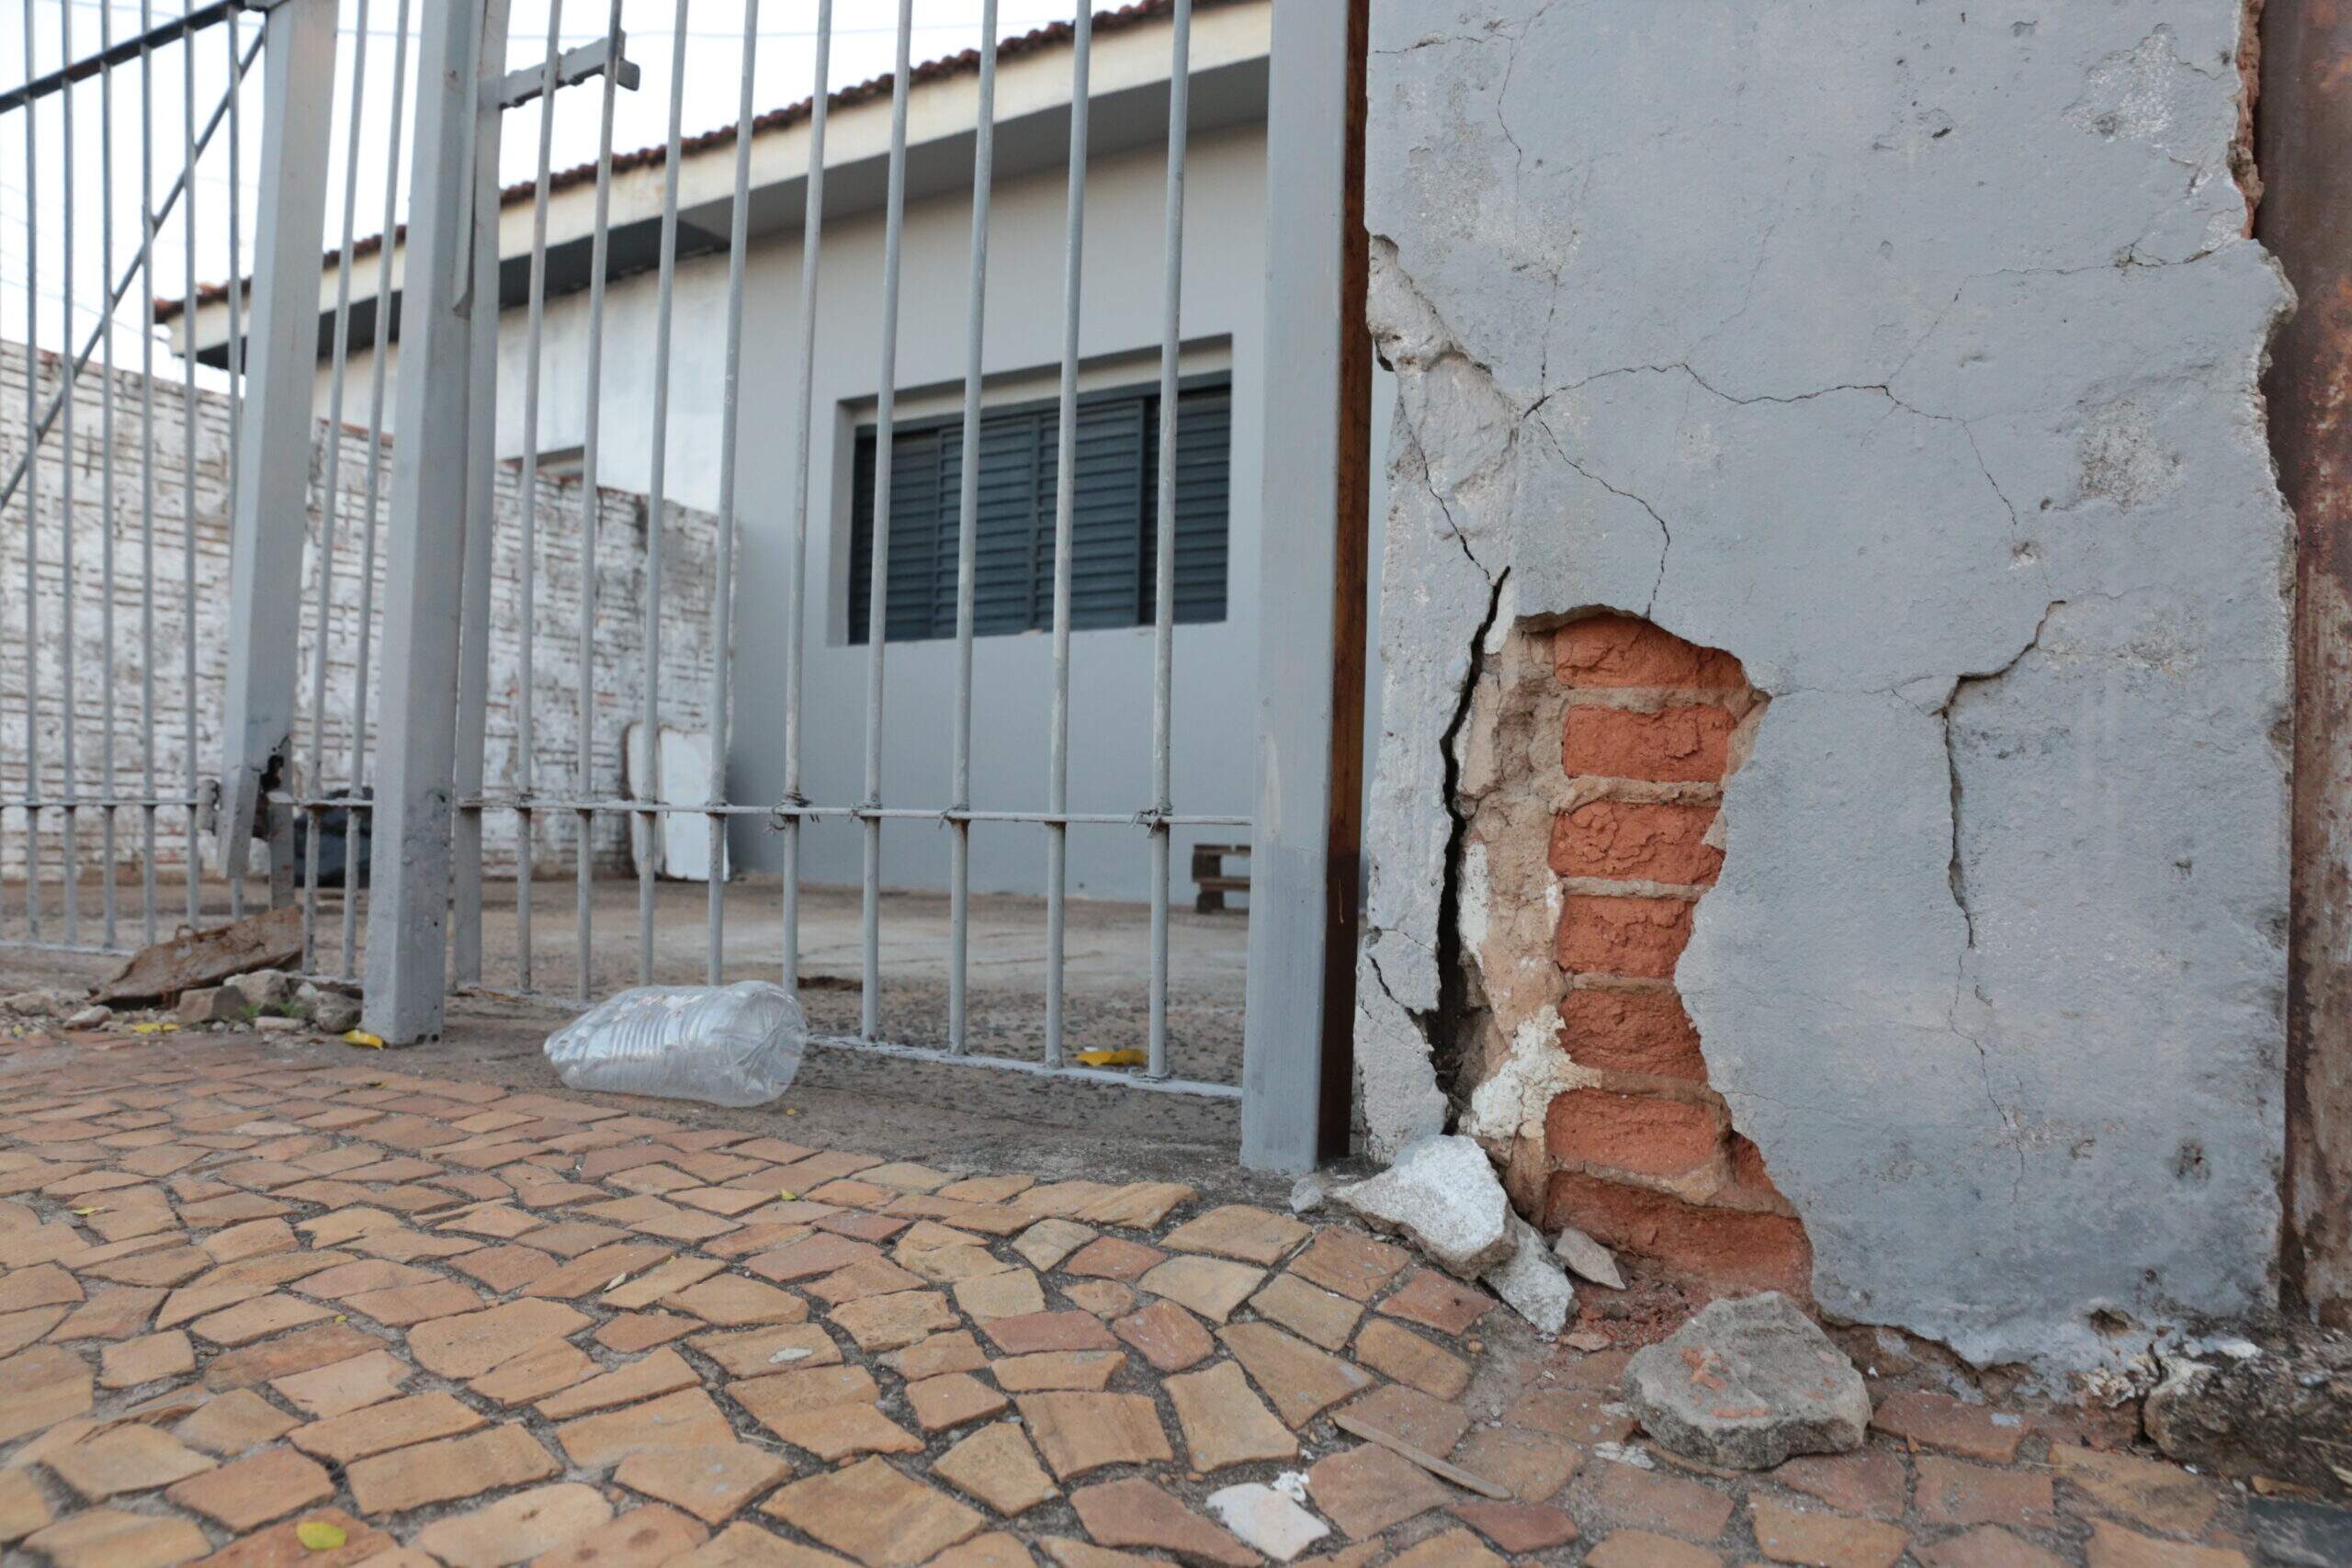 Rachaduras aumentam na Vila Dainese e moradores cobram prefeitura